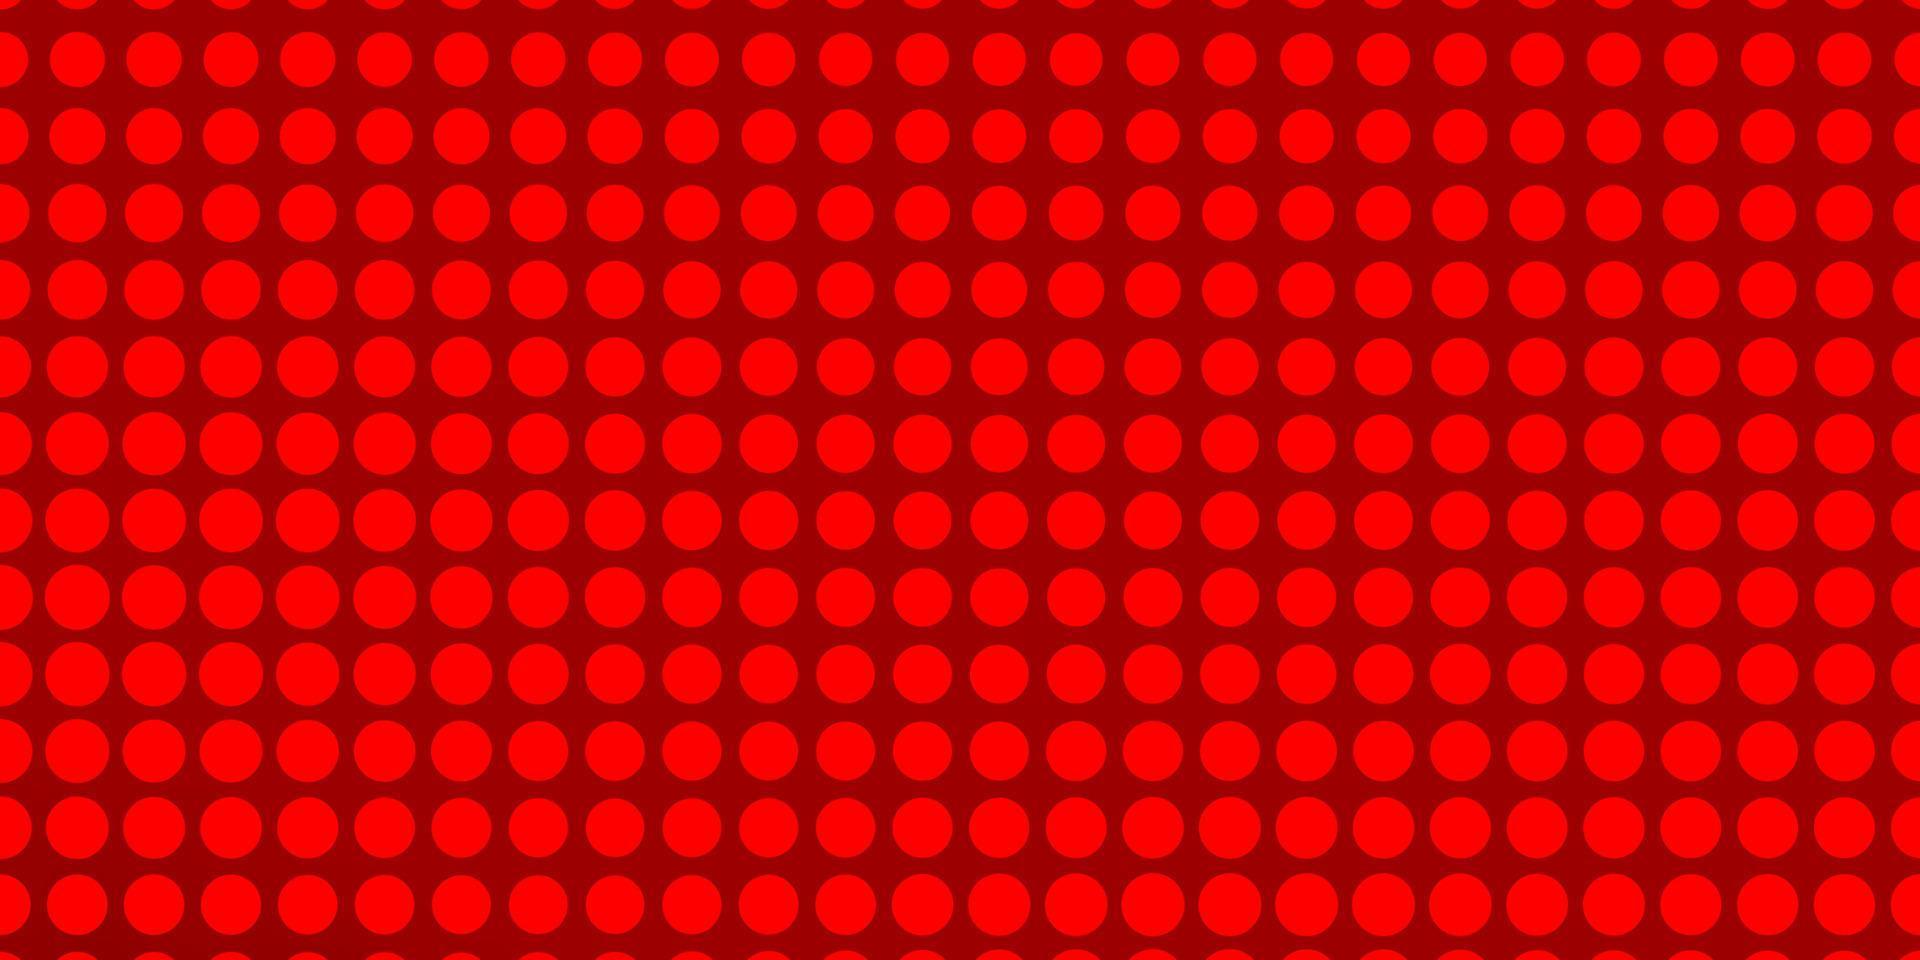 padrão de vetor vermelho claro com círculos.